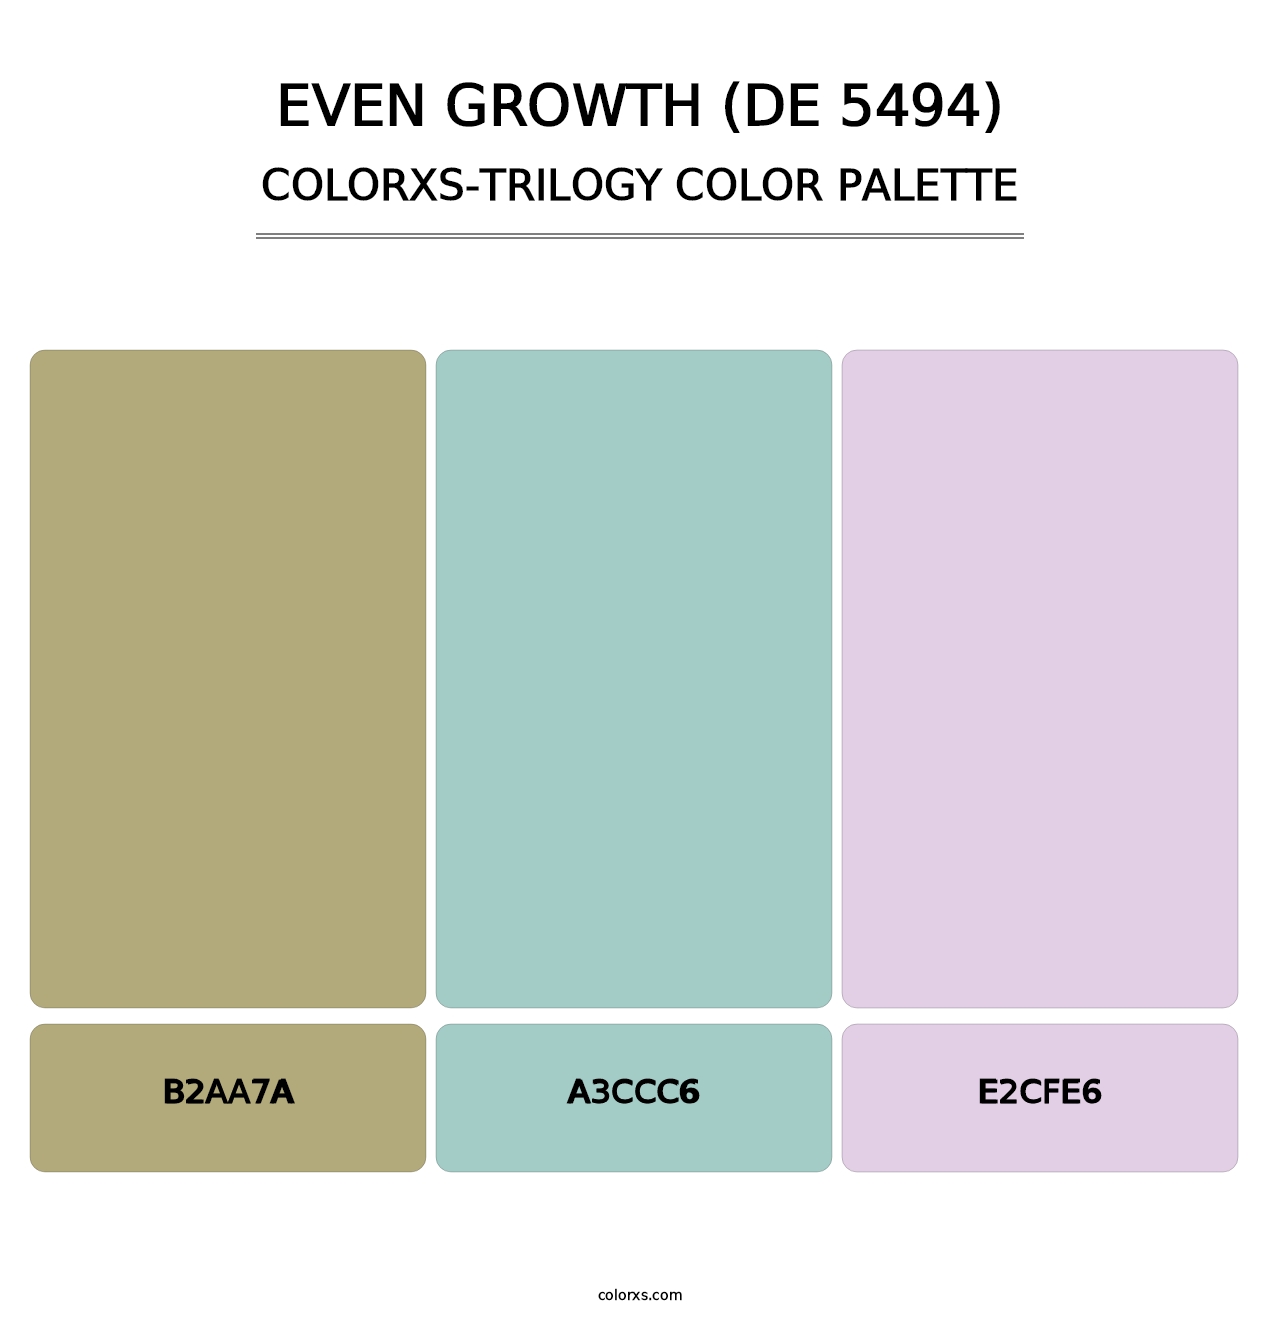 Even Growth (DE 5494) - Colorxs Trilogy Palette